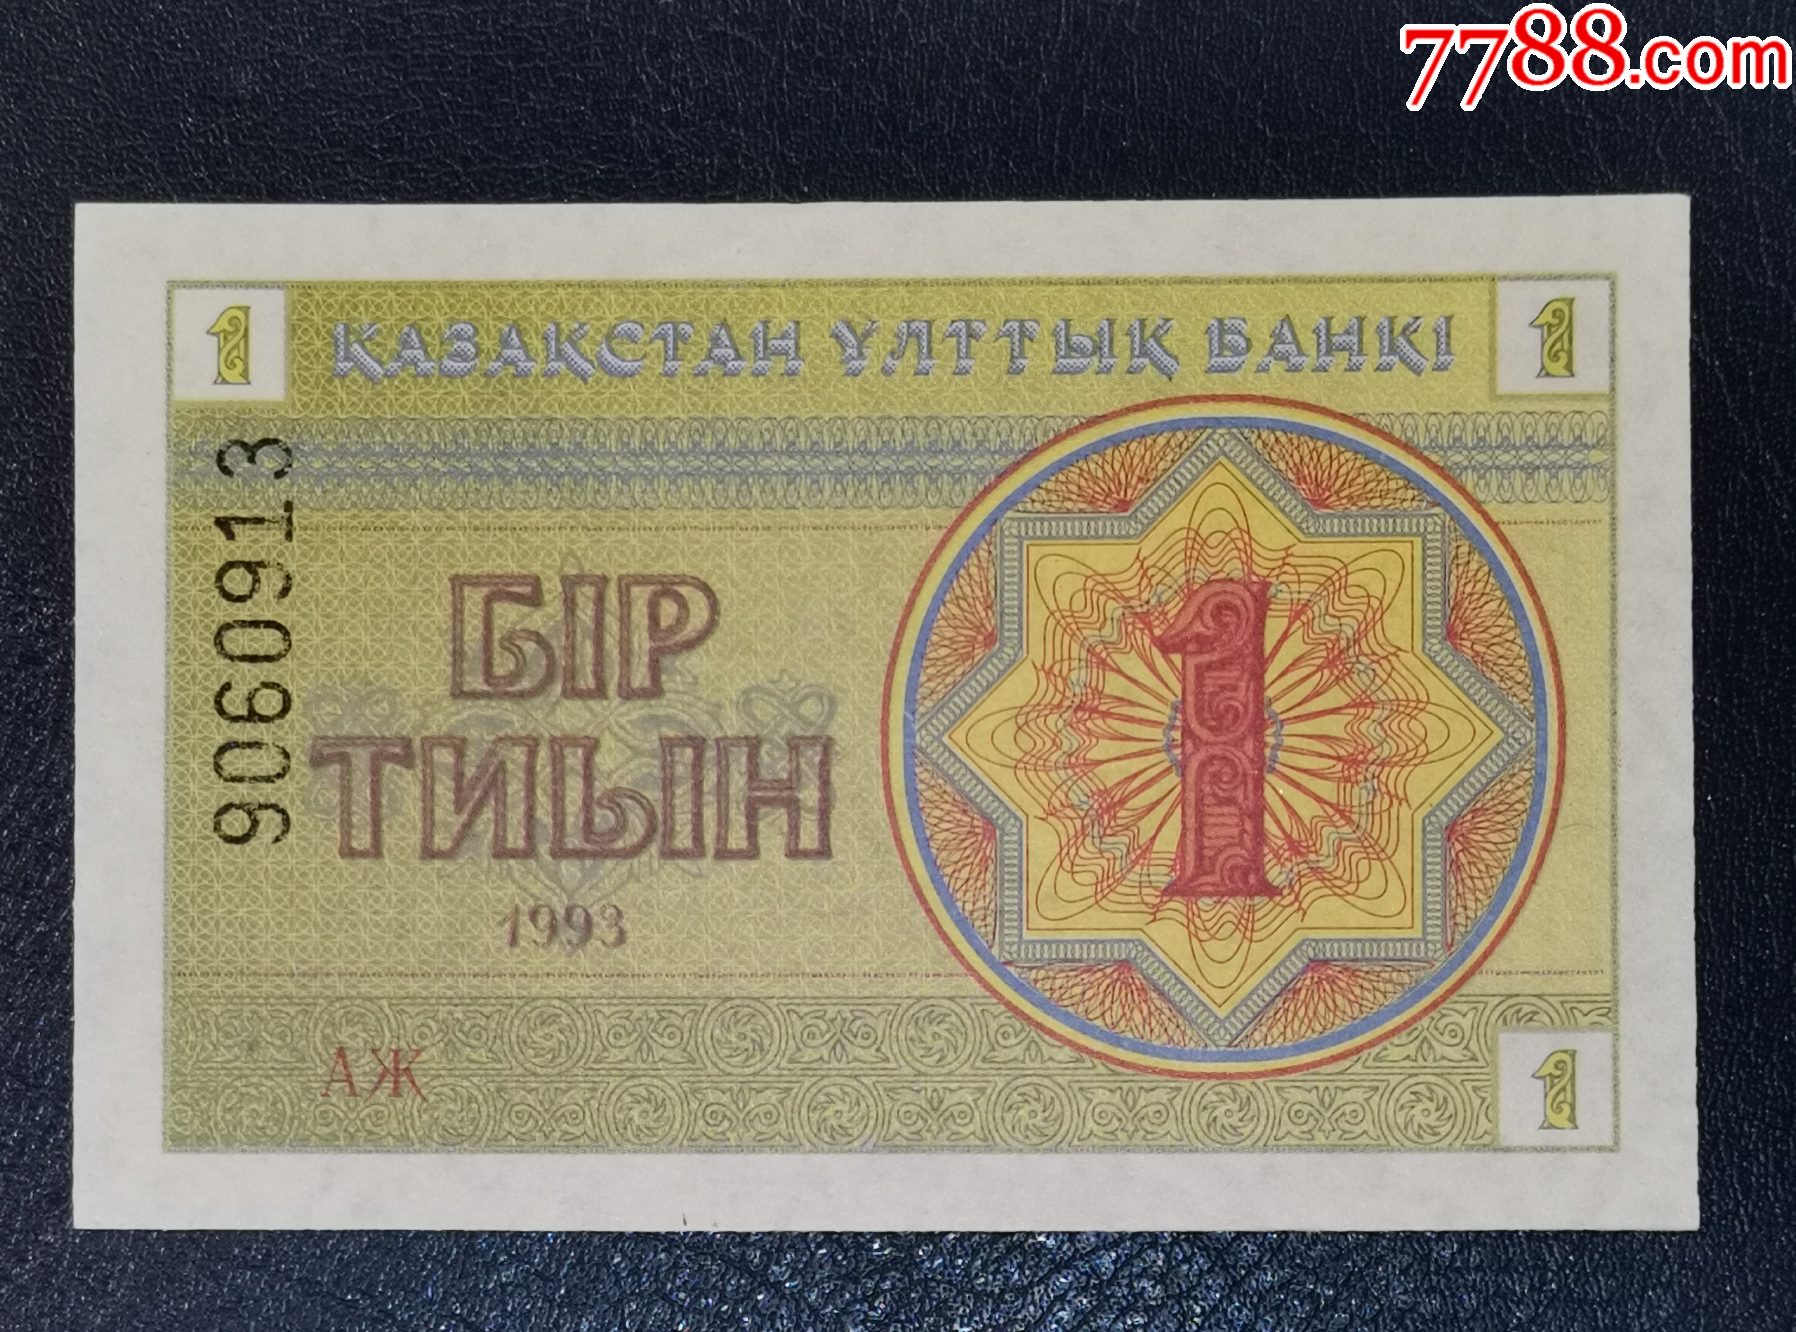 以哈萨克斯坦货币为背景的一包5000张哈萨克斯坦坚戈纸币高清摄影大图-千库网